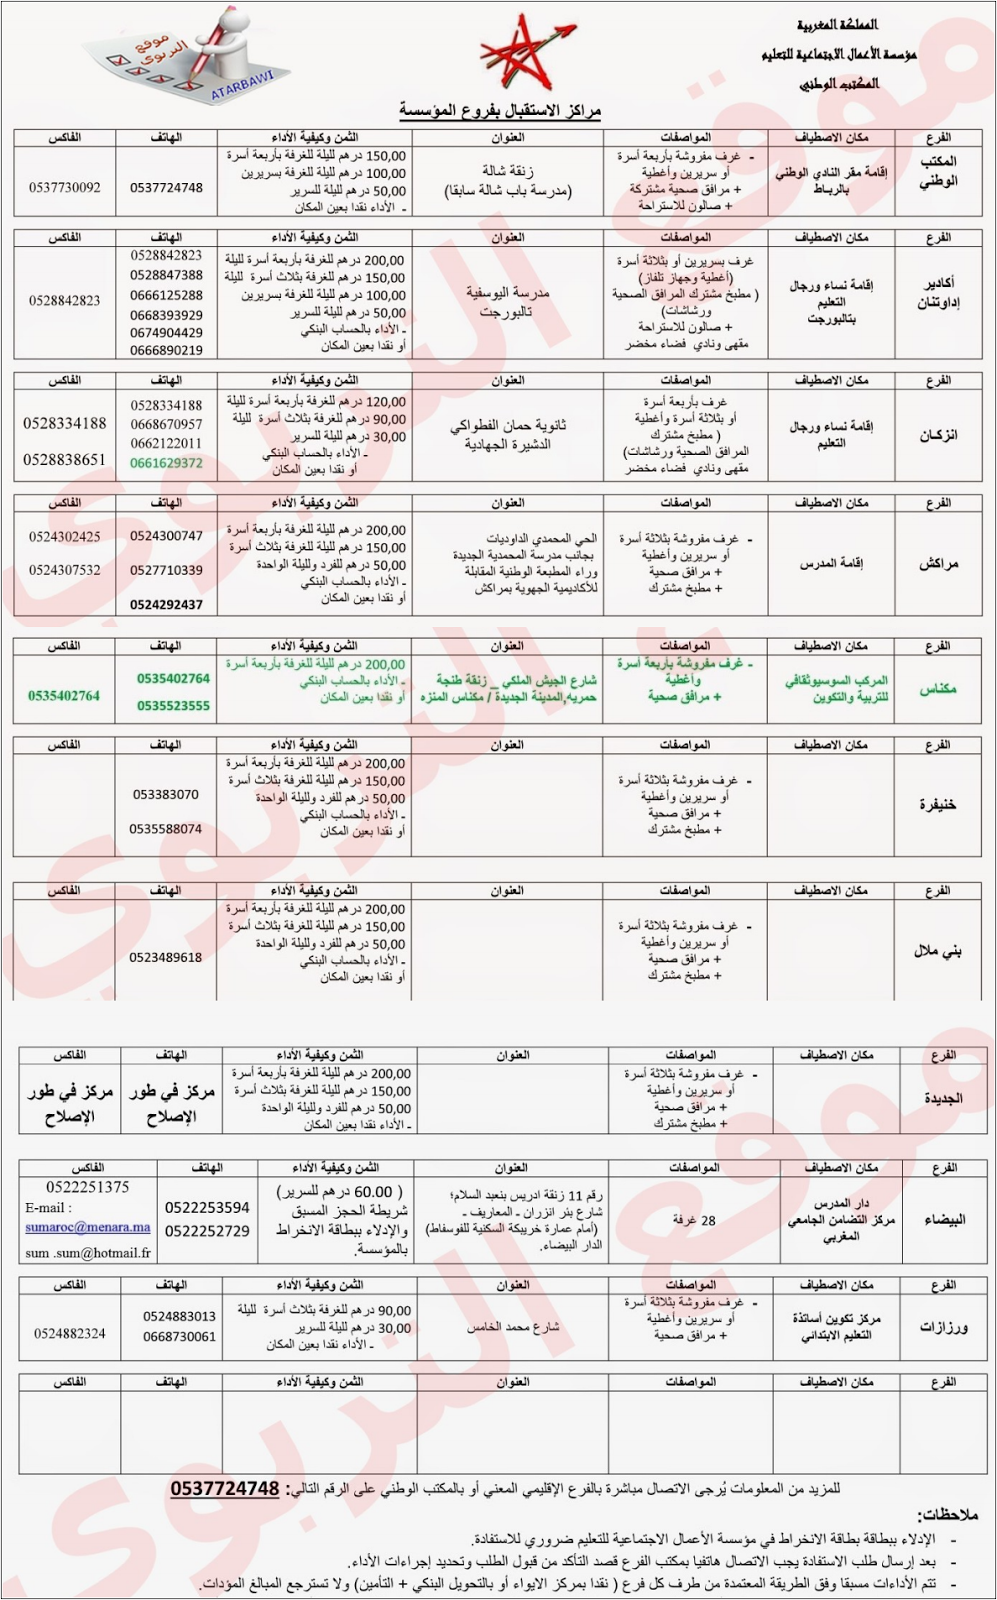 عناوين و أرقام هواتف إقامات المدرس بالمغرب 